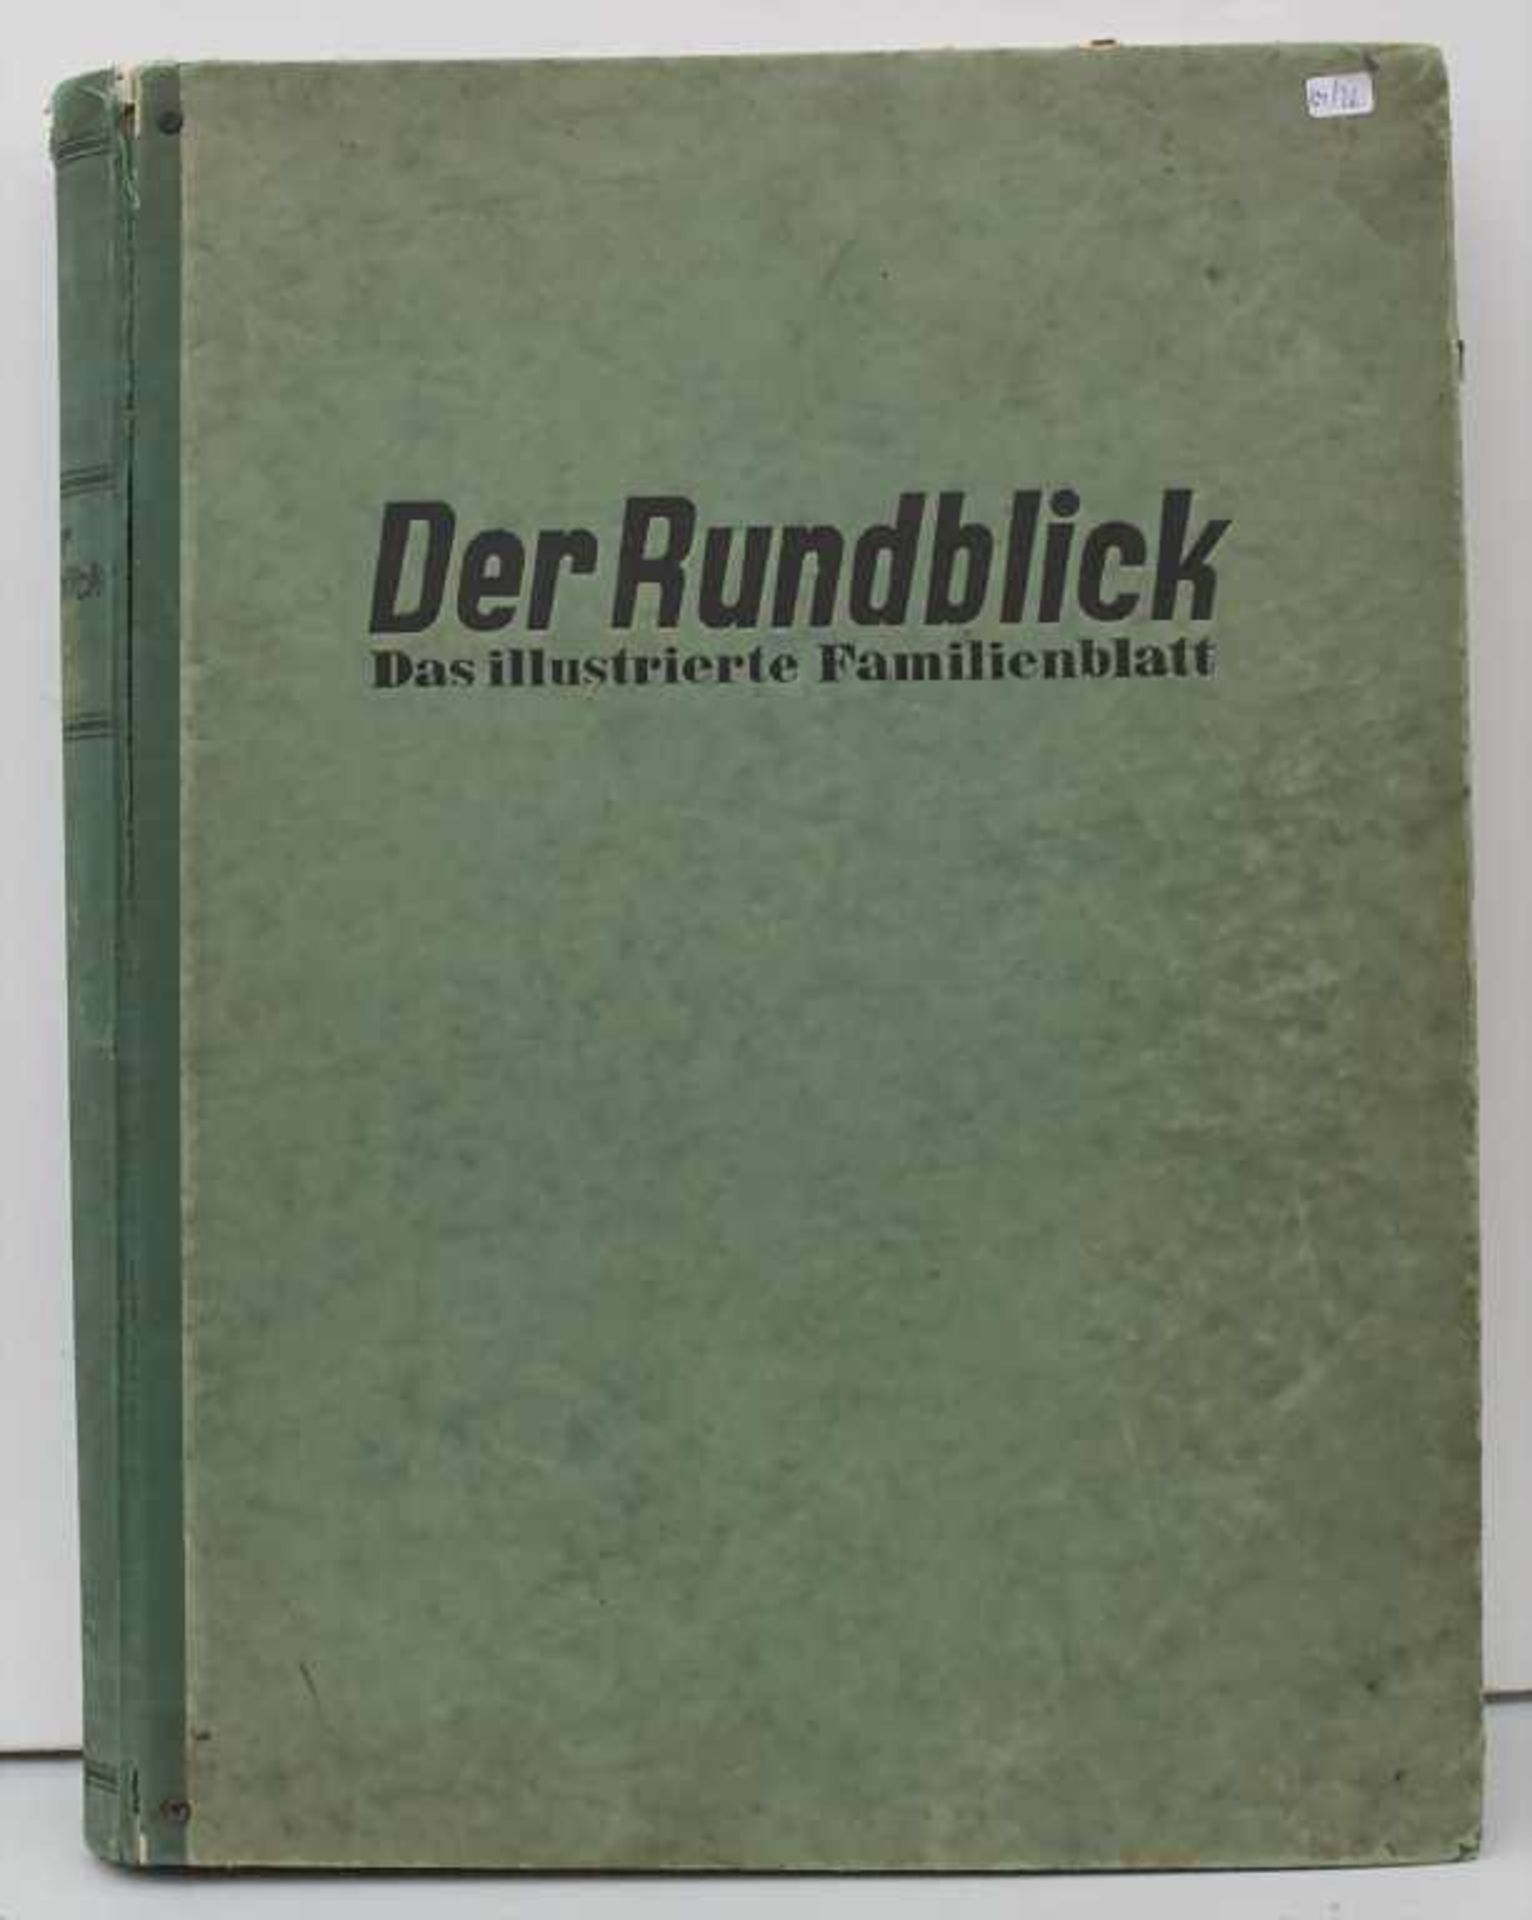 Magazin 'Der Rundblick' Drittes Reich / The magazine 'Der Rundblick' Third Reich - Image 5 of 5